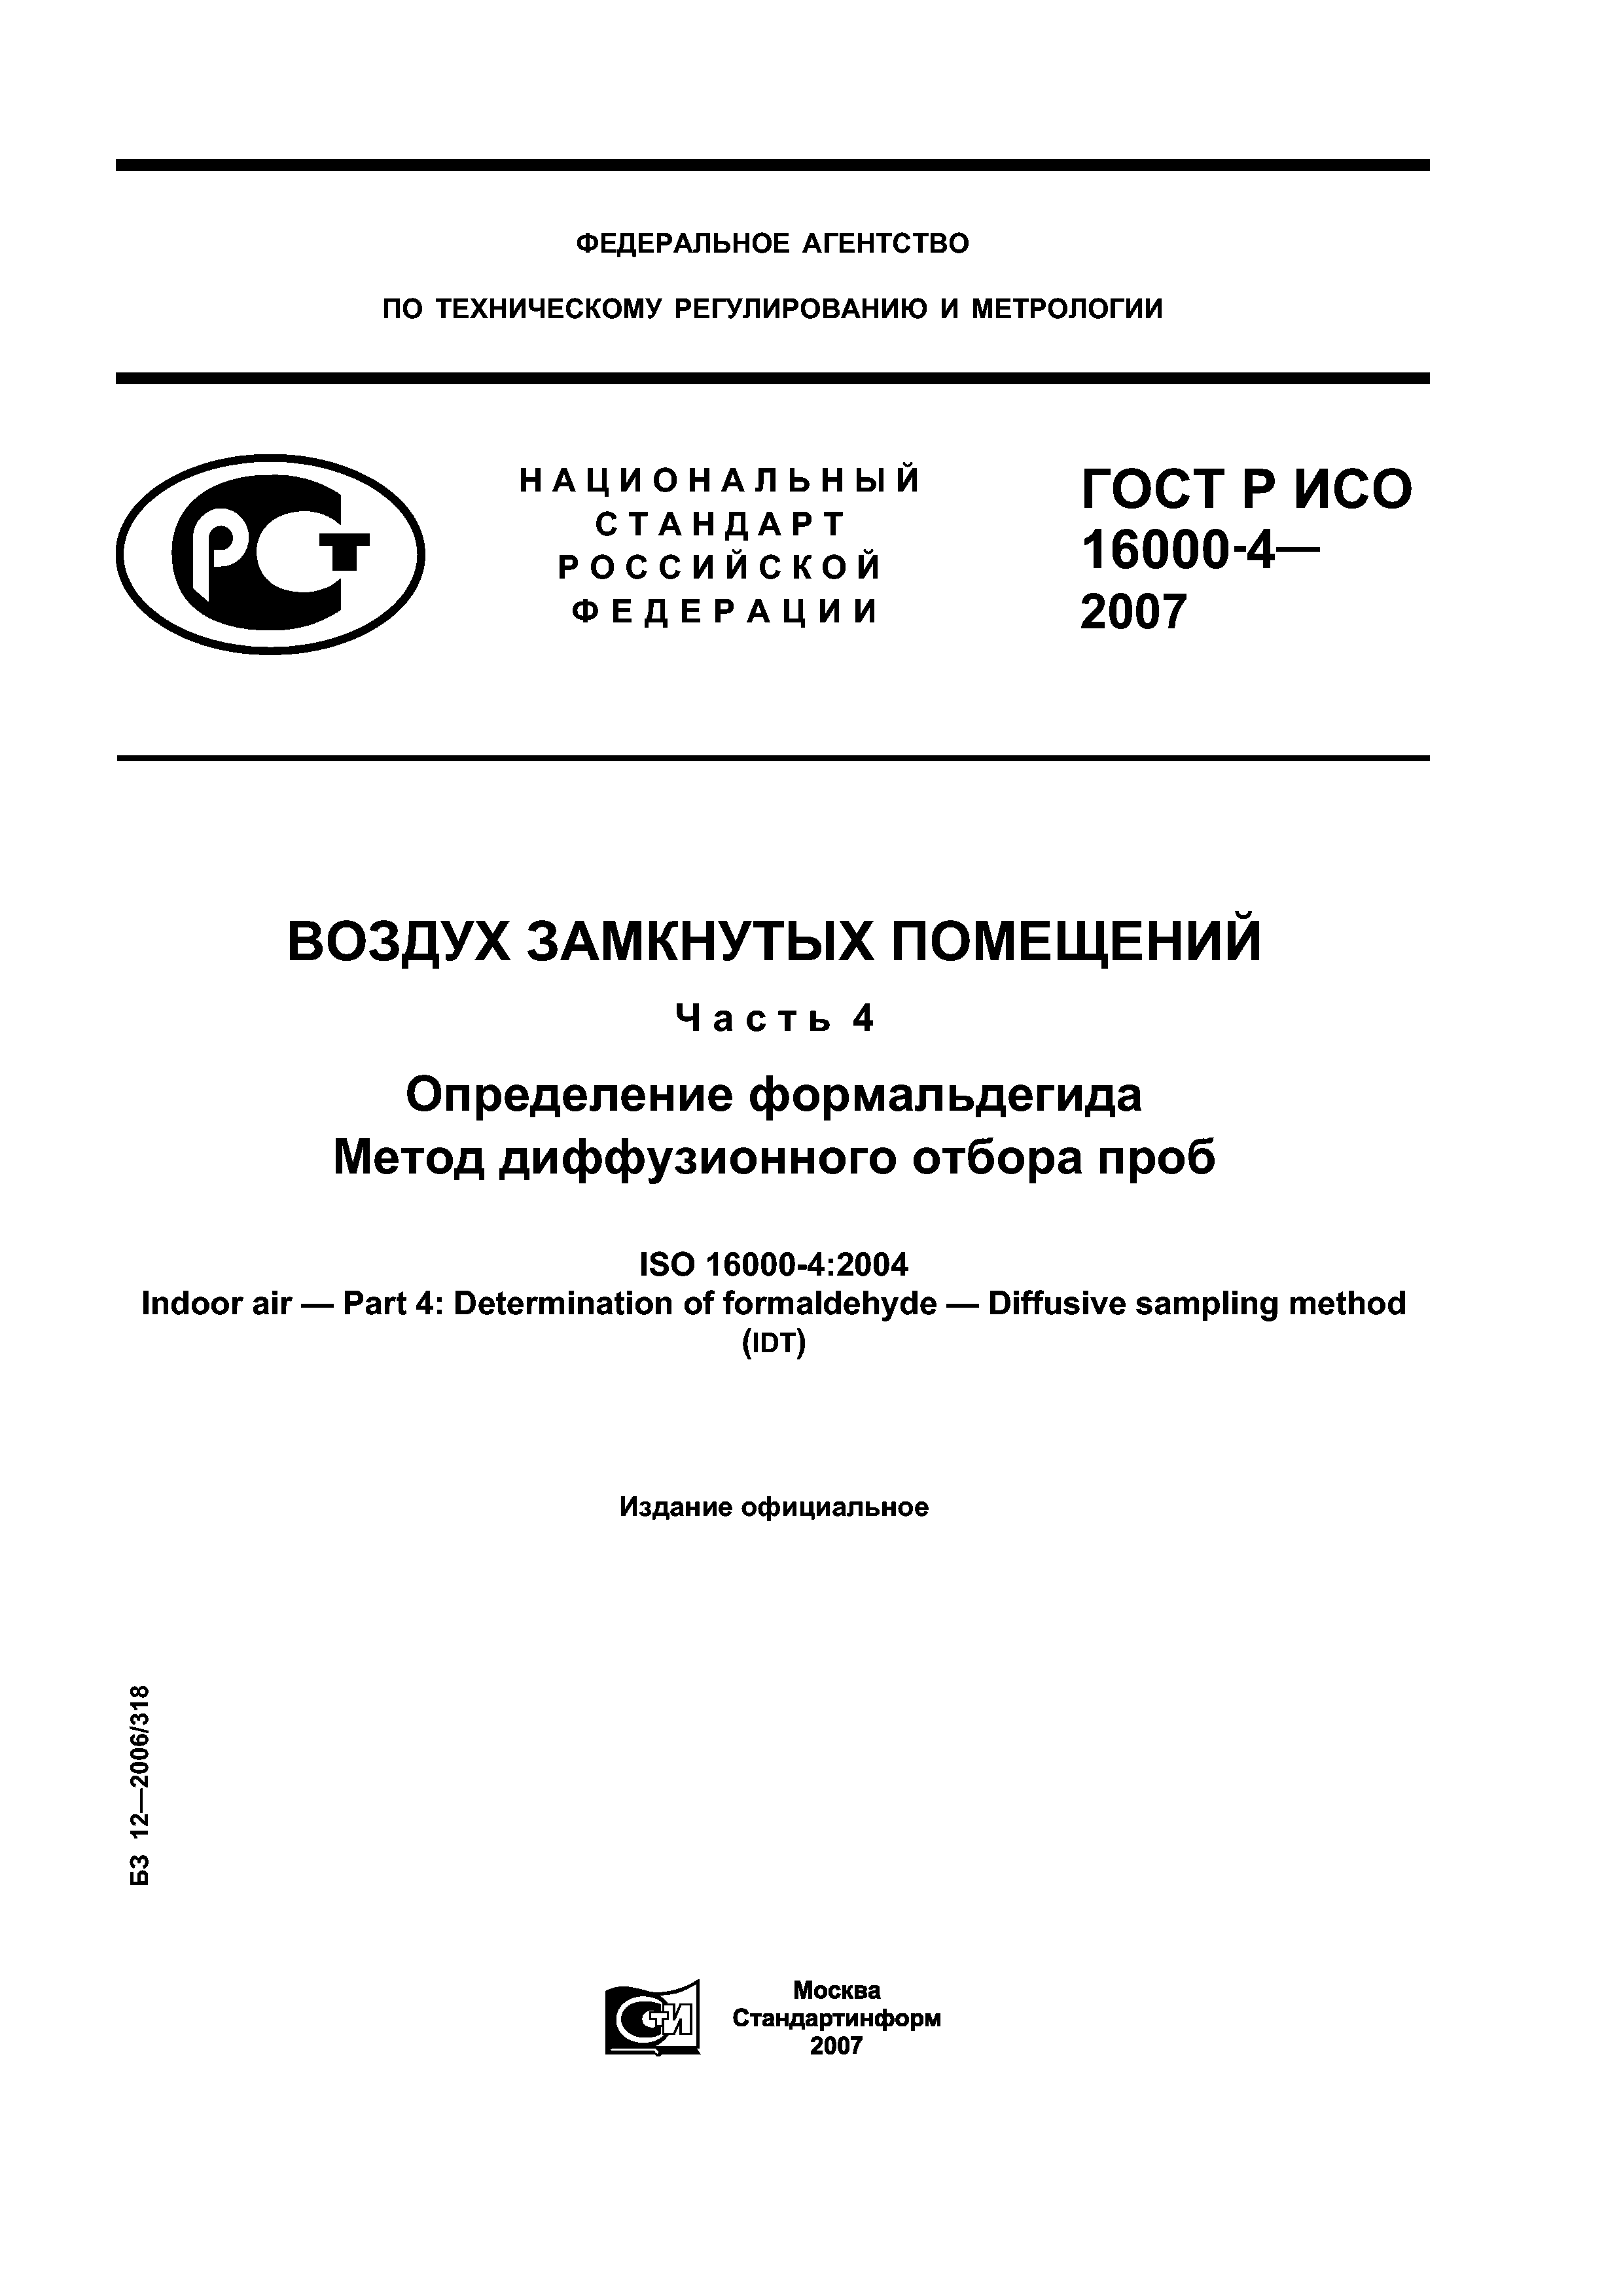 ГОСТ Р ИСО 16000-4-2007